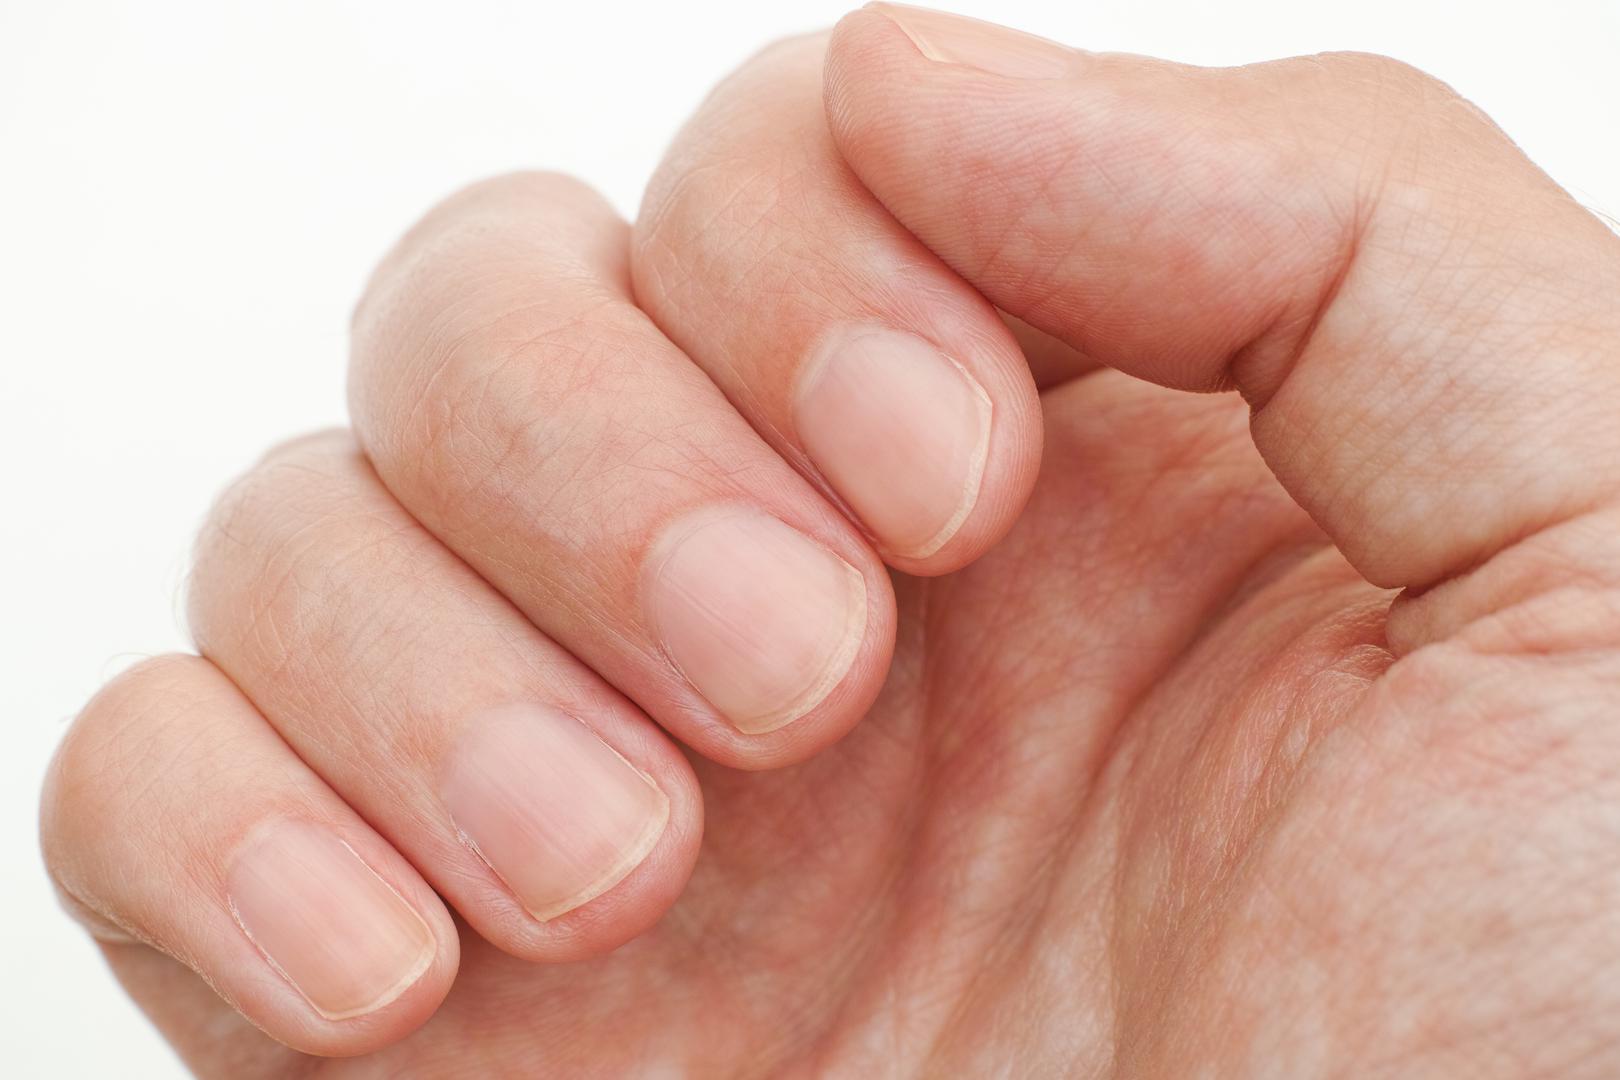 7. Provjerite svoje nokte: Možda ne mislite da vaši nokti mogu previše odati u vezi s vašim zdravljem, međutim, dr. Wild kaže da promjene u izgledu vaših noktiju mogu istaknuti temeljno zdravstveno stanje. Objašnjava: ‘Ako niste ozlijedili nokat i primijetite promjene boje, udubljenja, izbočine ili da oni postaju lomljivi, obratite se liječniku. Bijele mrlje također mogu ukazivati ​​na zdravstveno stanje ako osjetite druge simptome uz promjene na noktima, poput osjećaja slabosti, umora, nedostatka daha ili imate zamagljen vid’. 